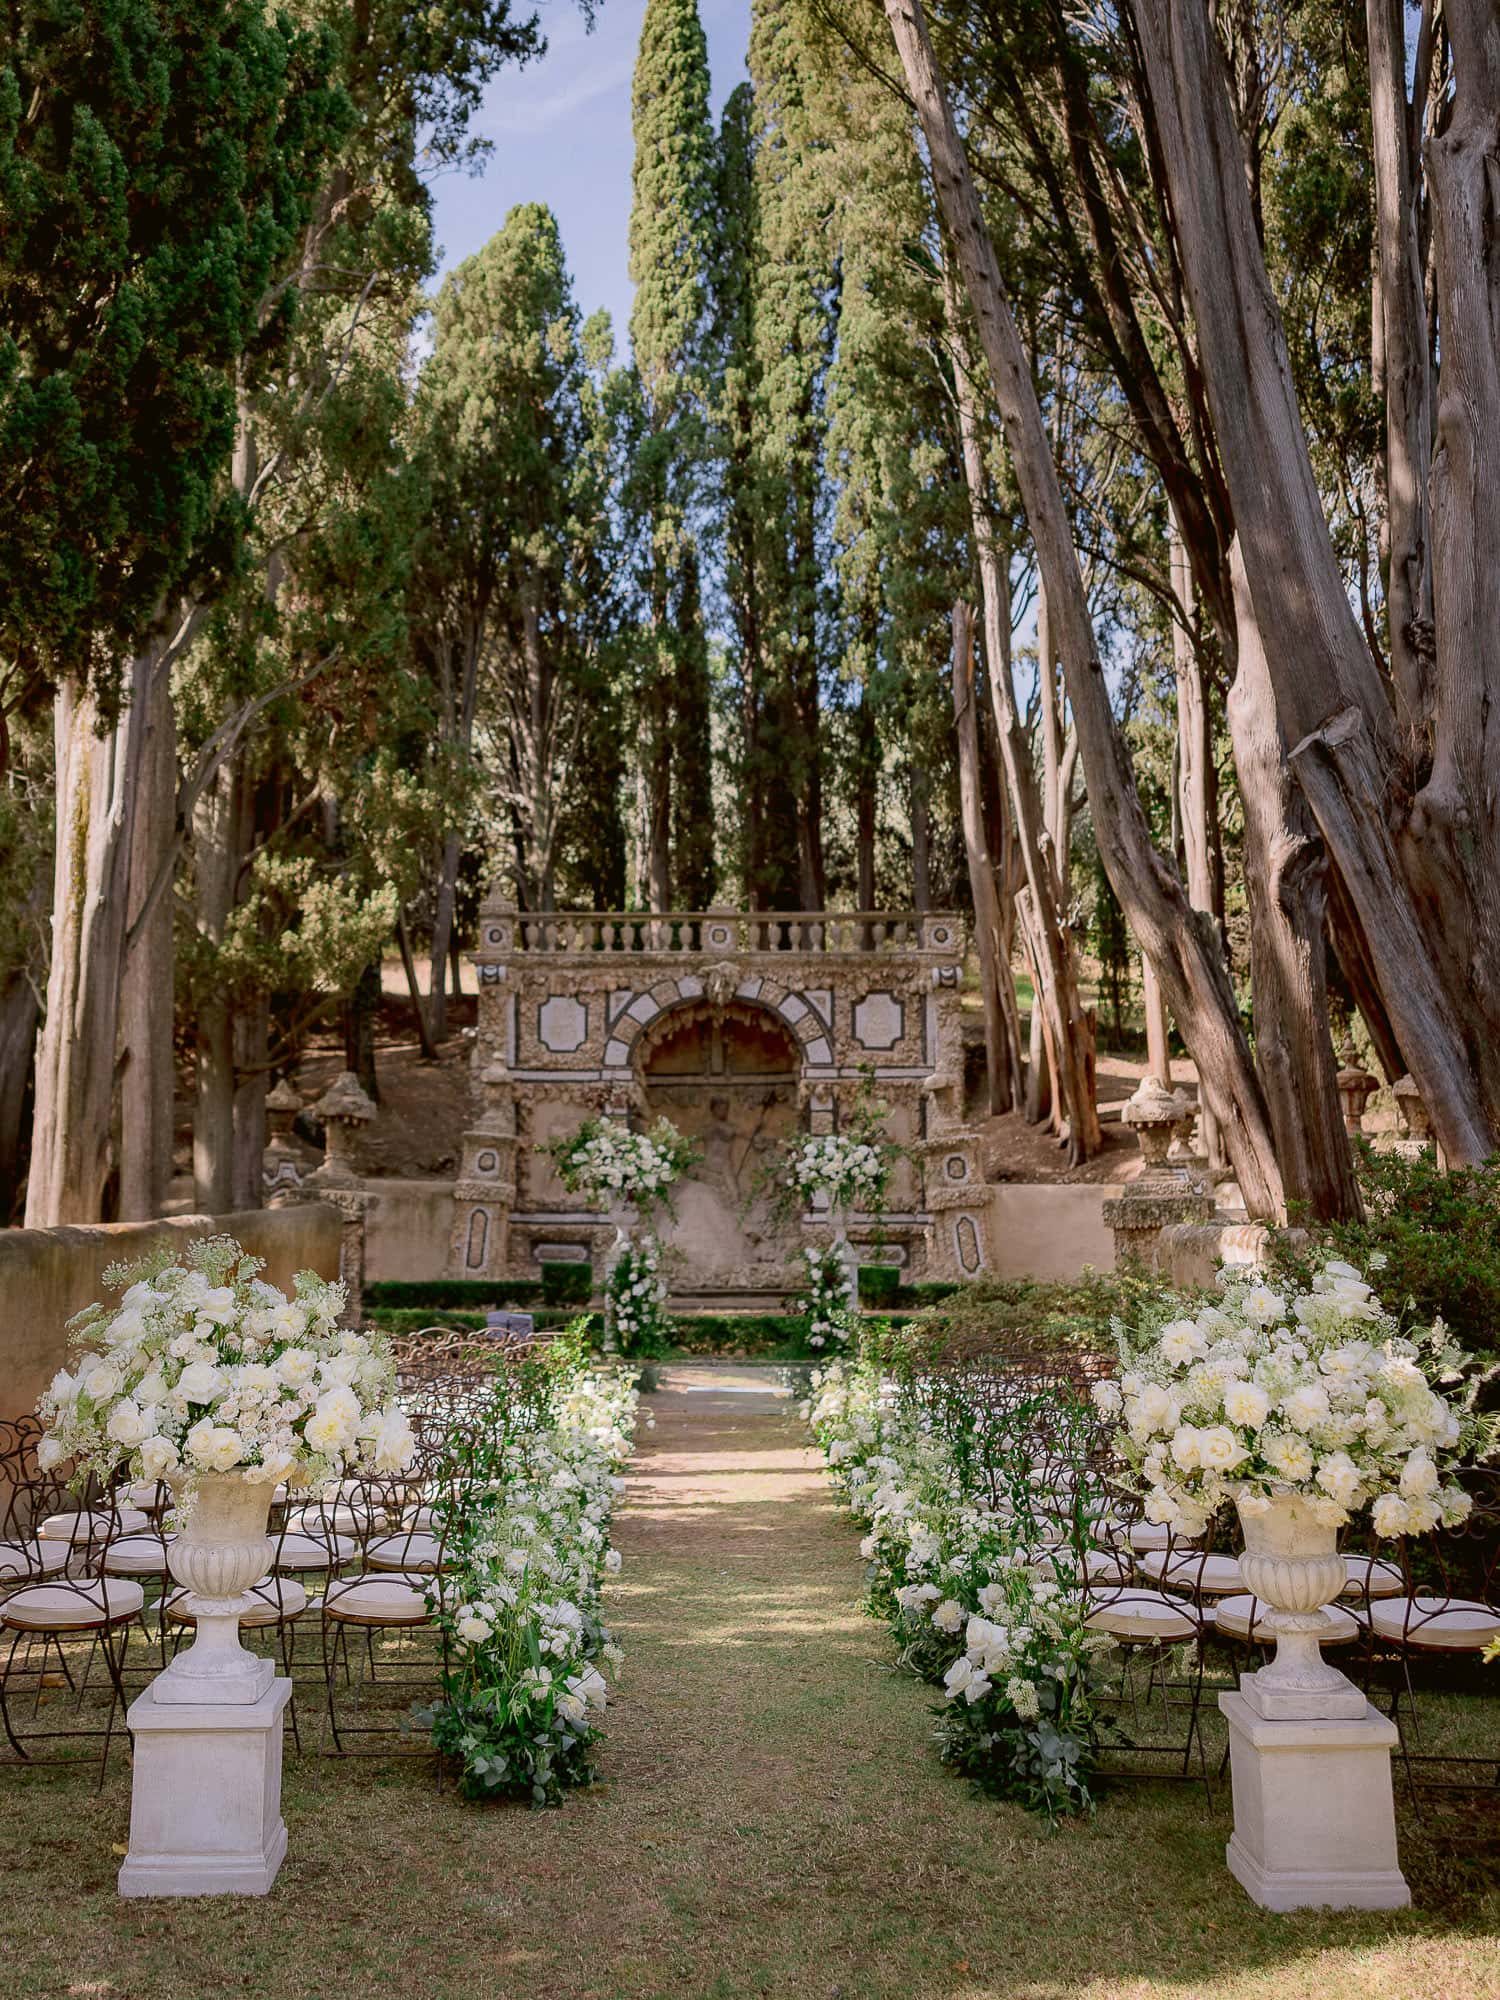 a ceremony setting at villa gamberaia